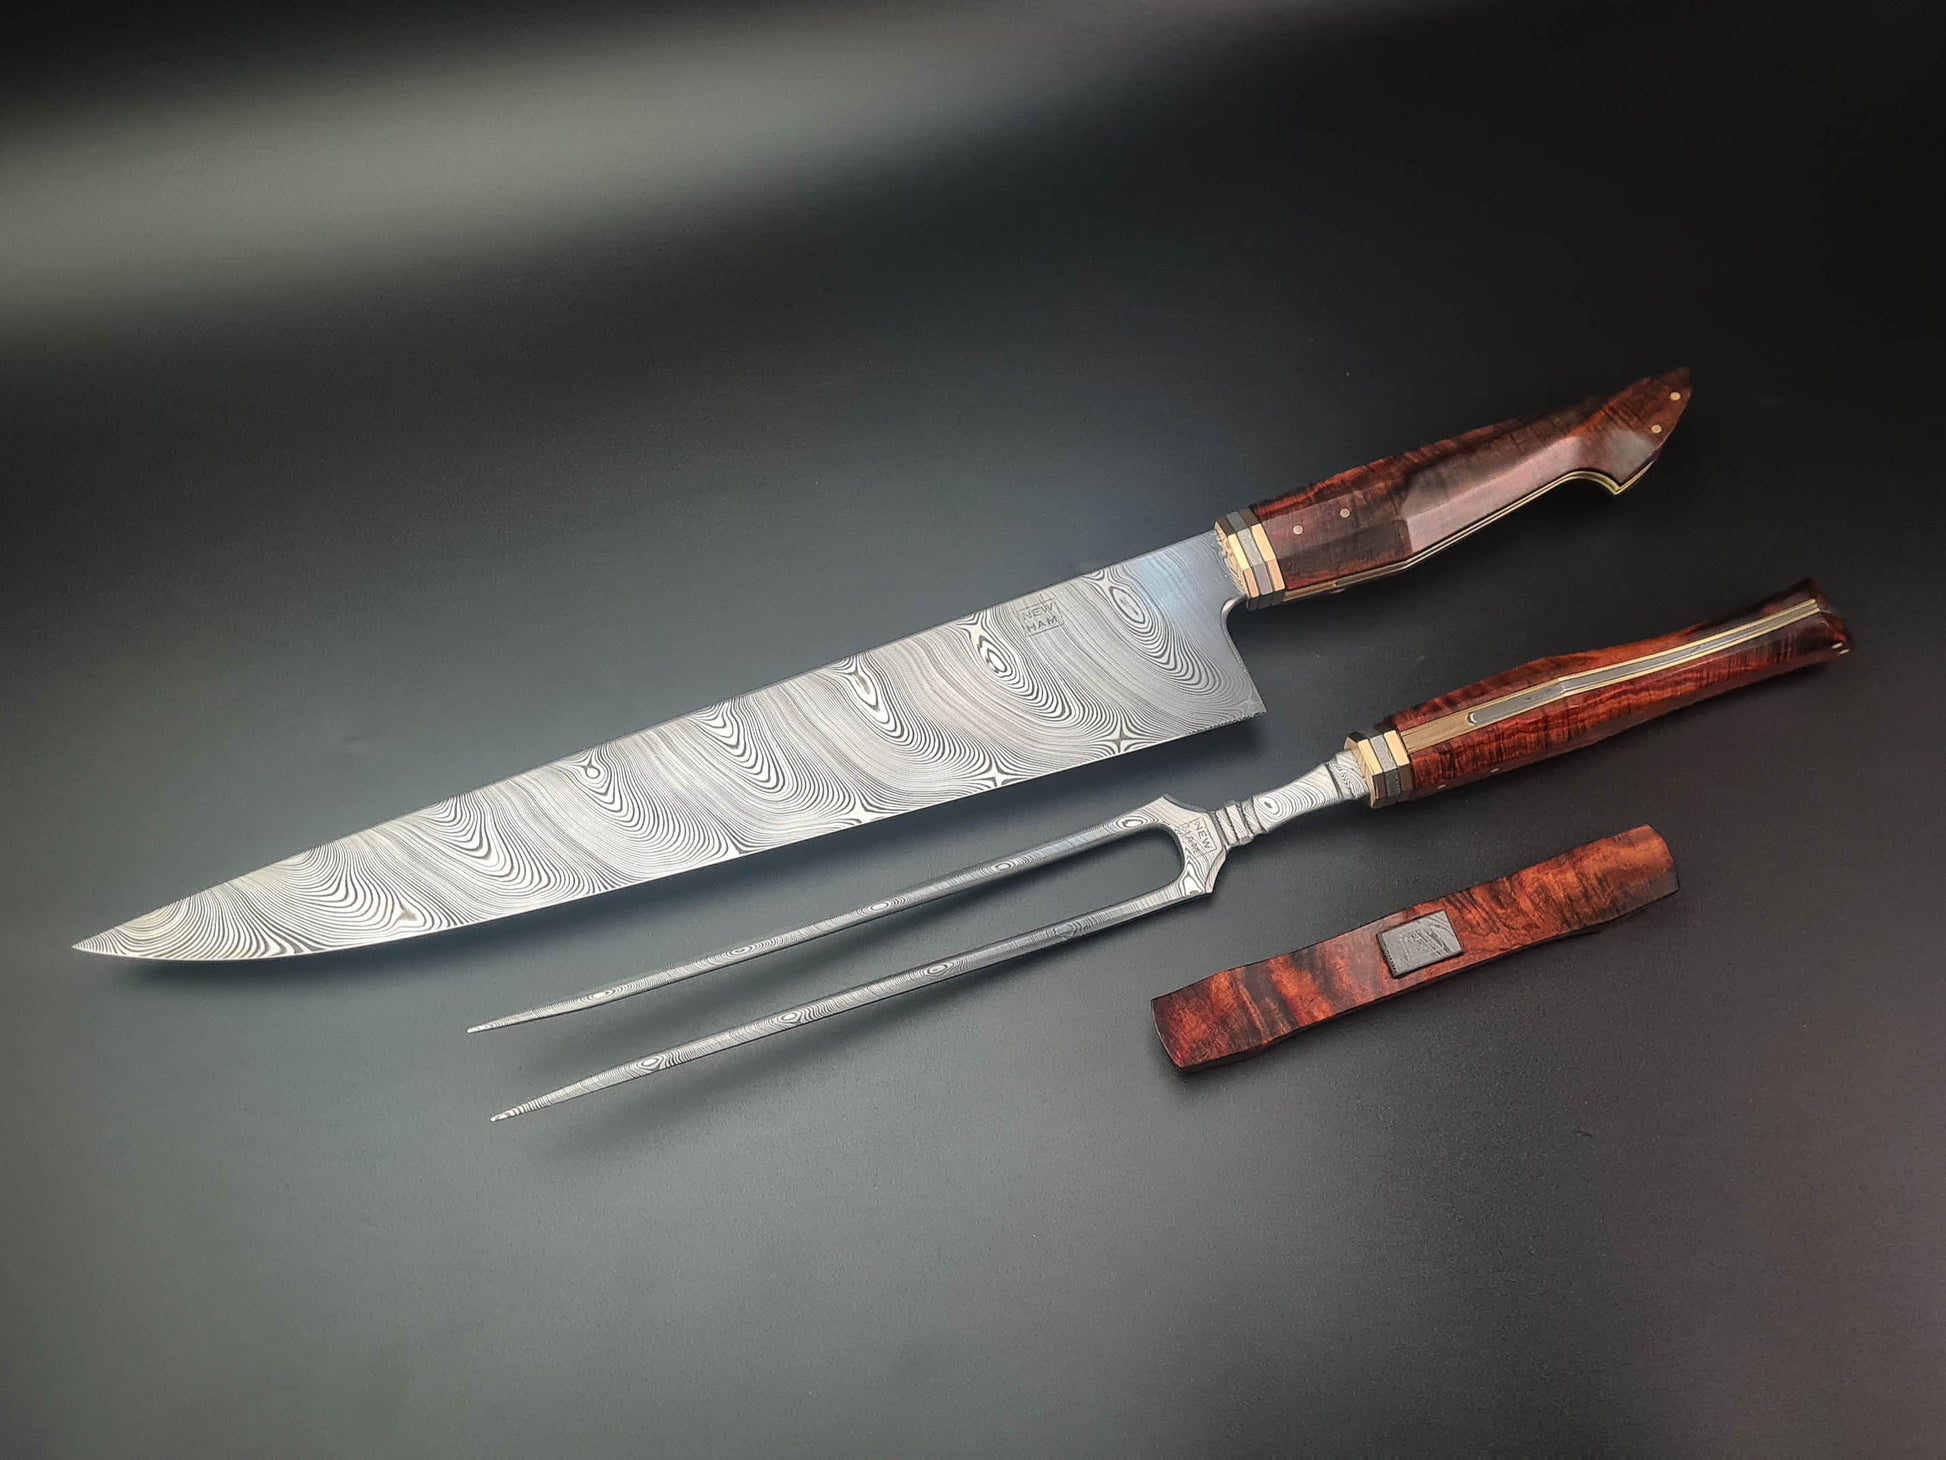 Knife Sets for sale in Kinunga, Central, Kenya